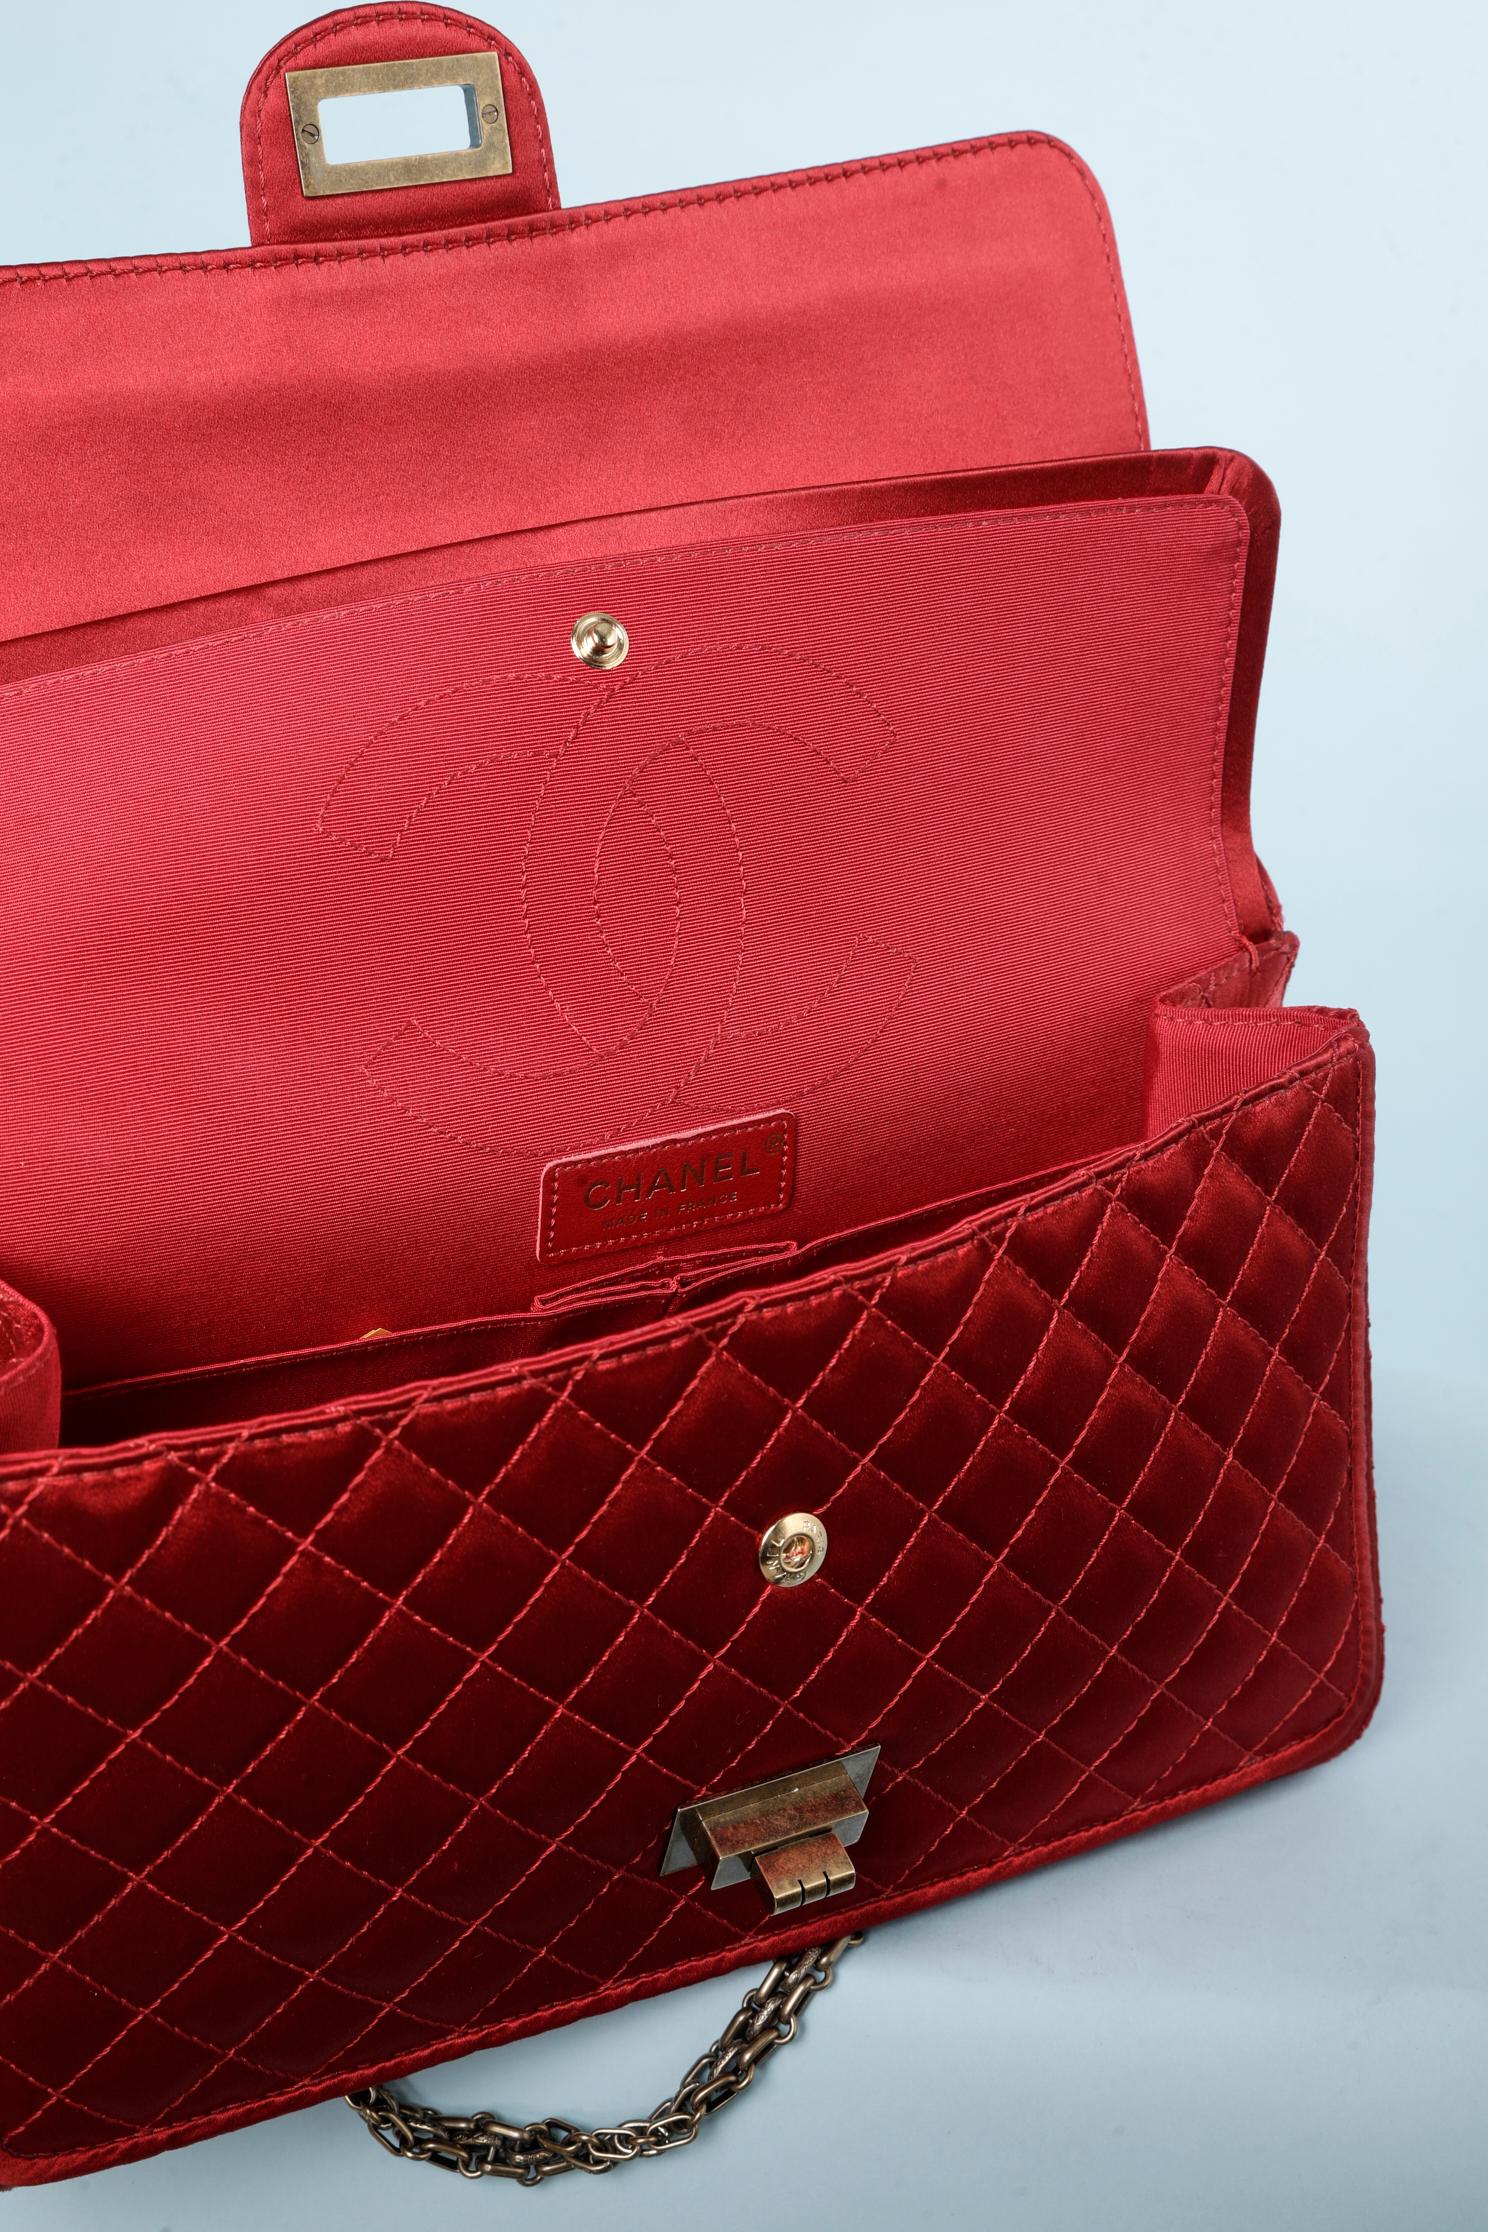 Satin Ruby Chanel bag Collection Paris-Shangai Métiers d'Arts 2011 For Sale 6